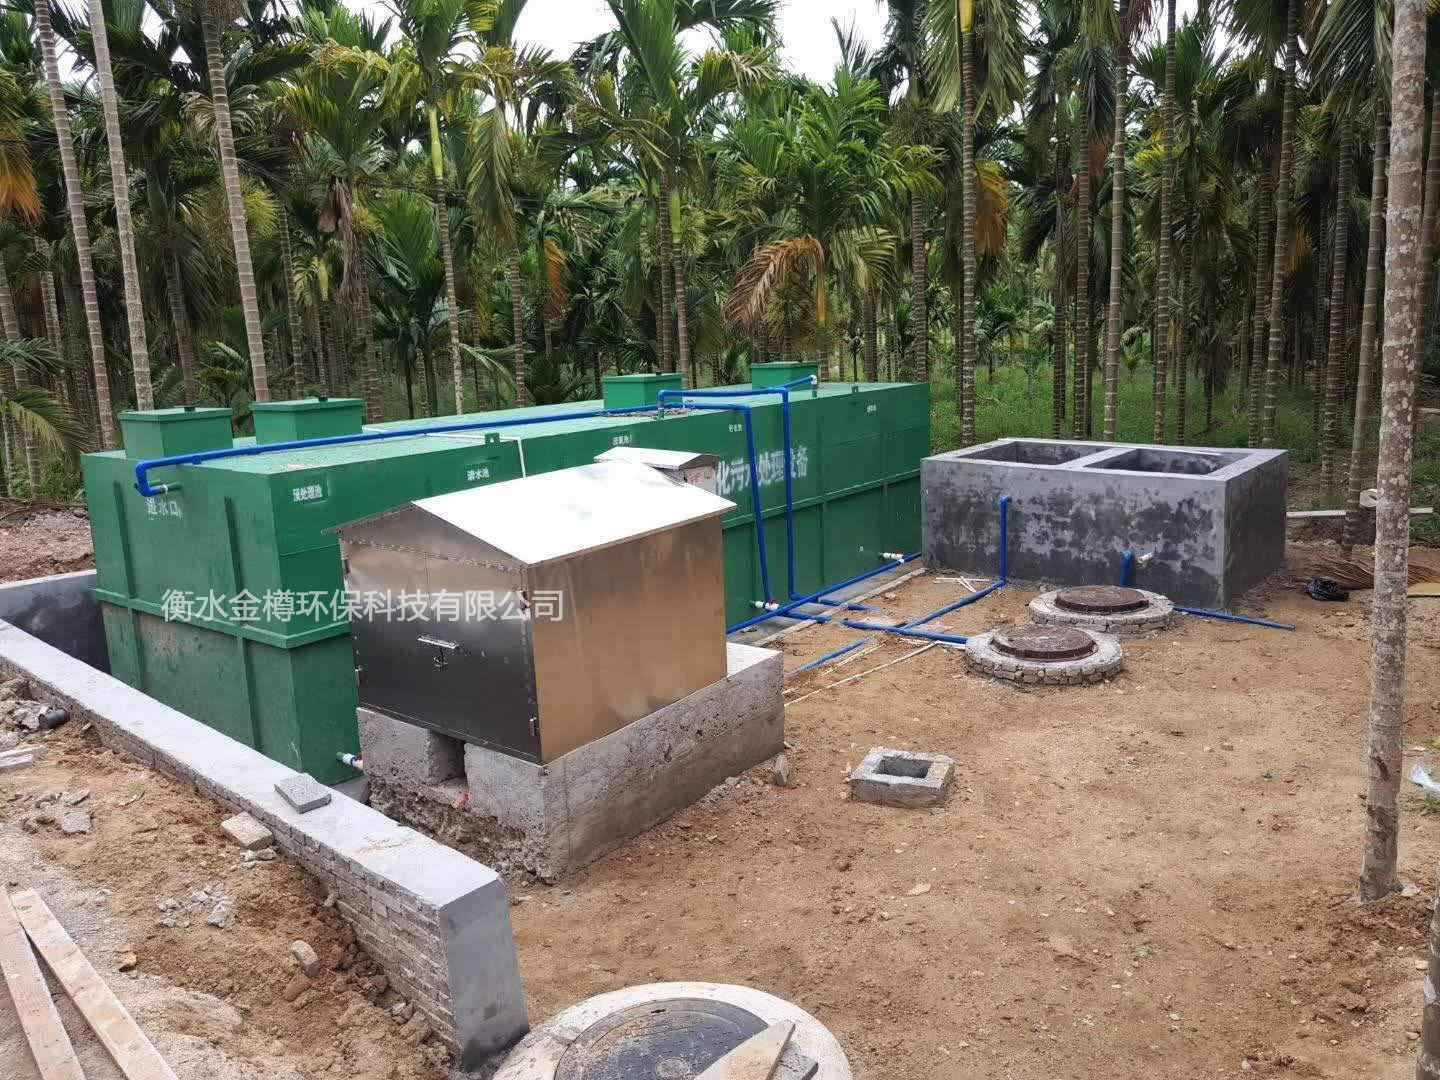 农村污水处理设备@农村污水处理一体化设备厂家批发图片